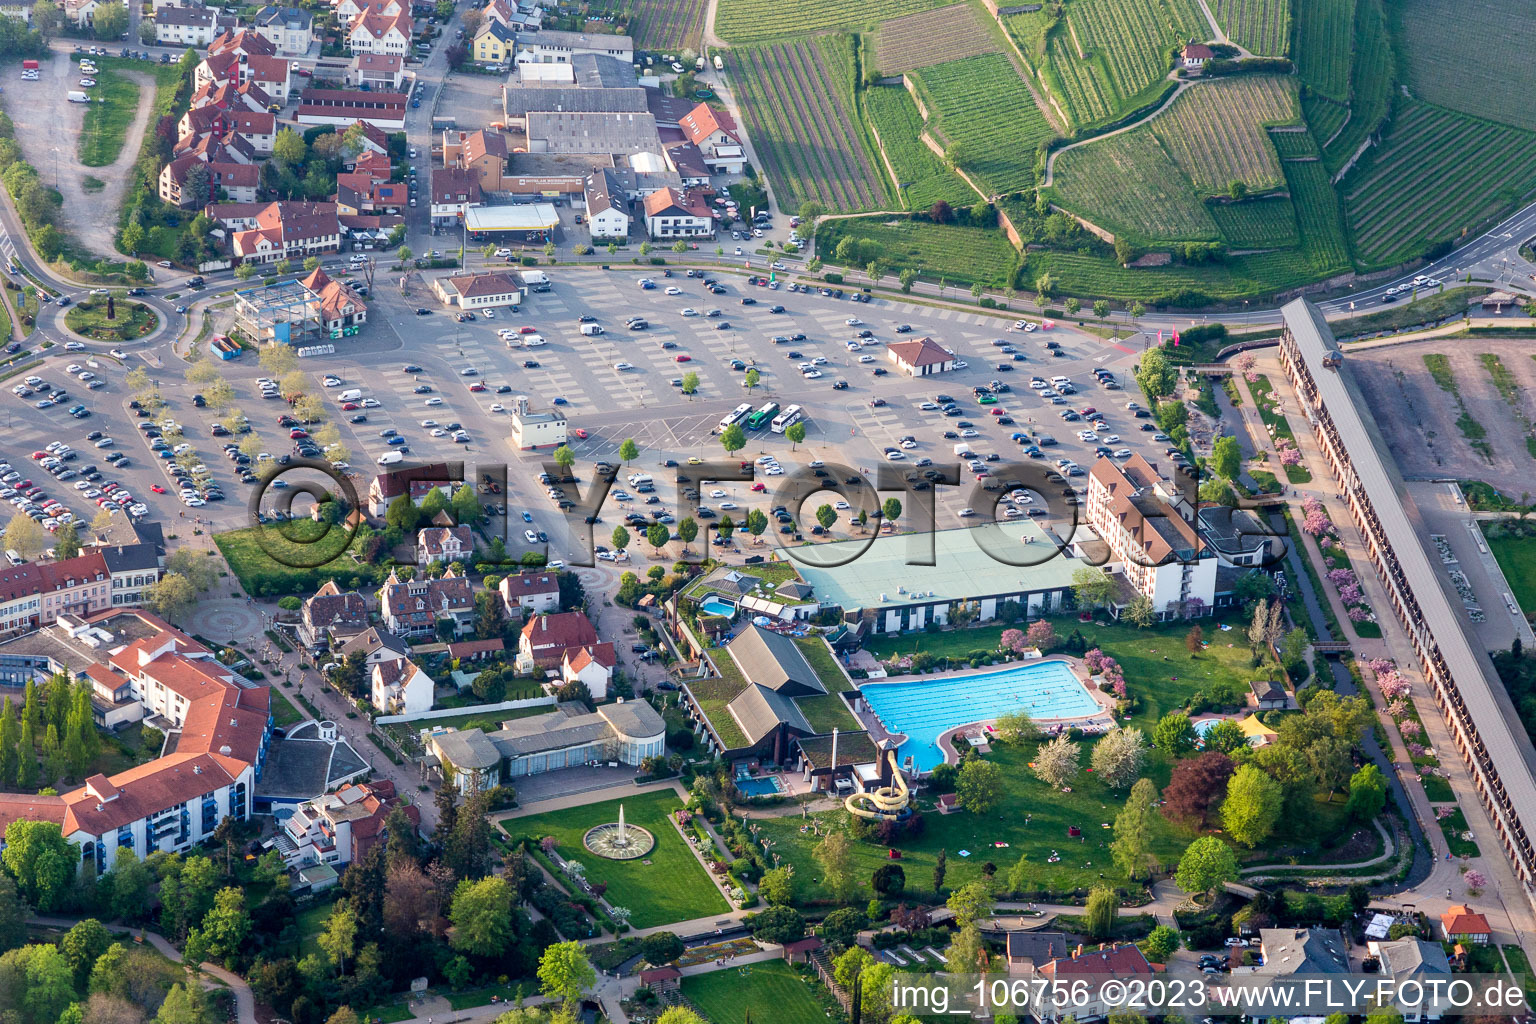 Vue aérienne de Piscine récréative Salinarium au Wurstmarkt à Bad Dürkheim dans le département Rhénanie-Palatinat, Allemagne